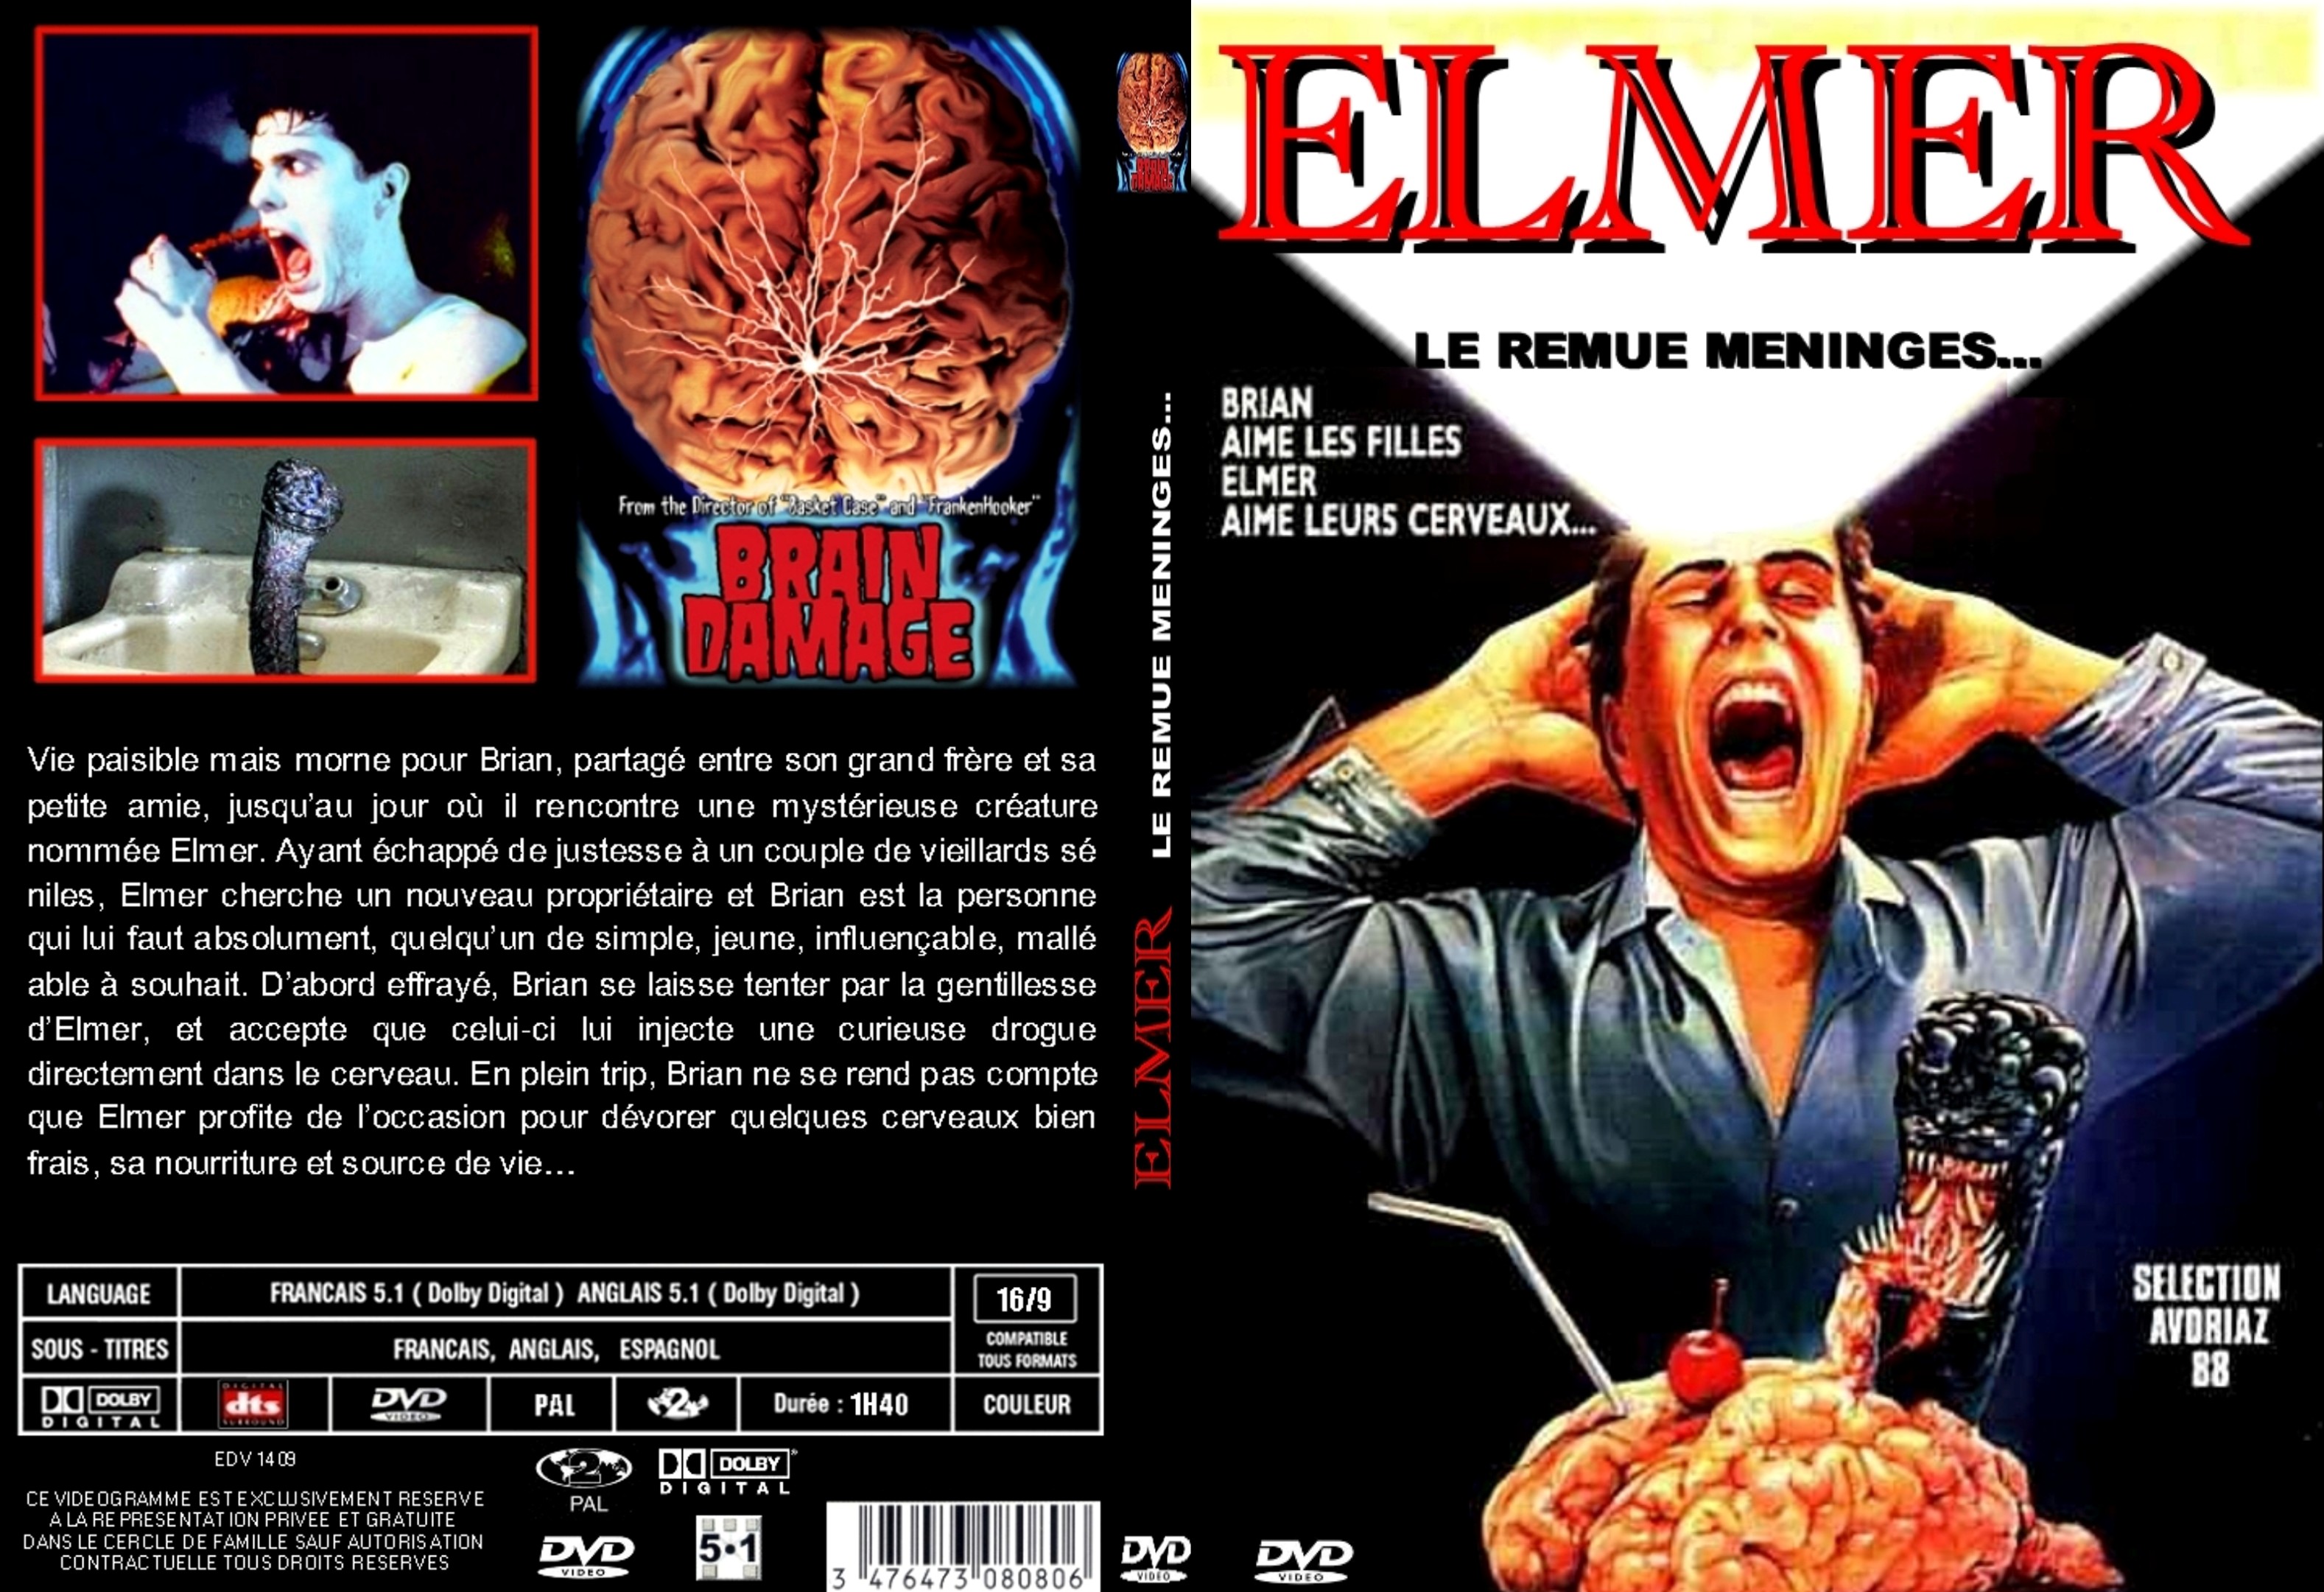 Jaquette DVD Elmer le remue meninges custom - SLIM